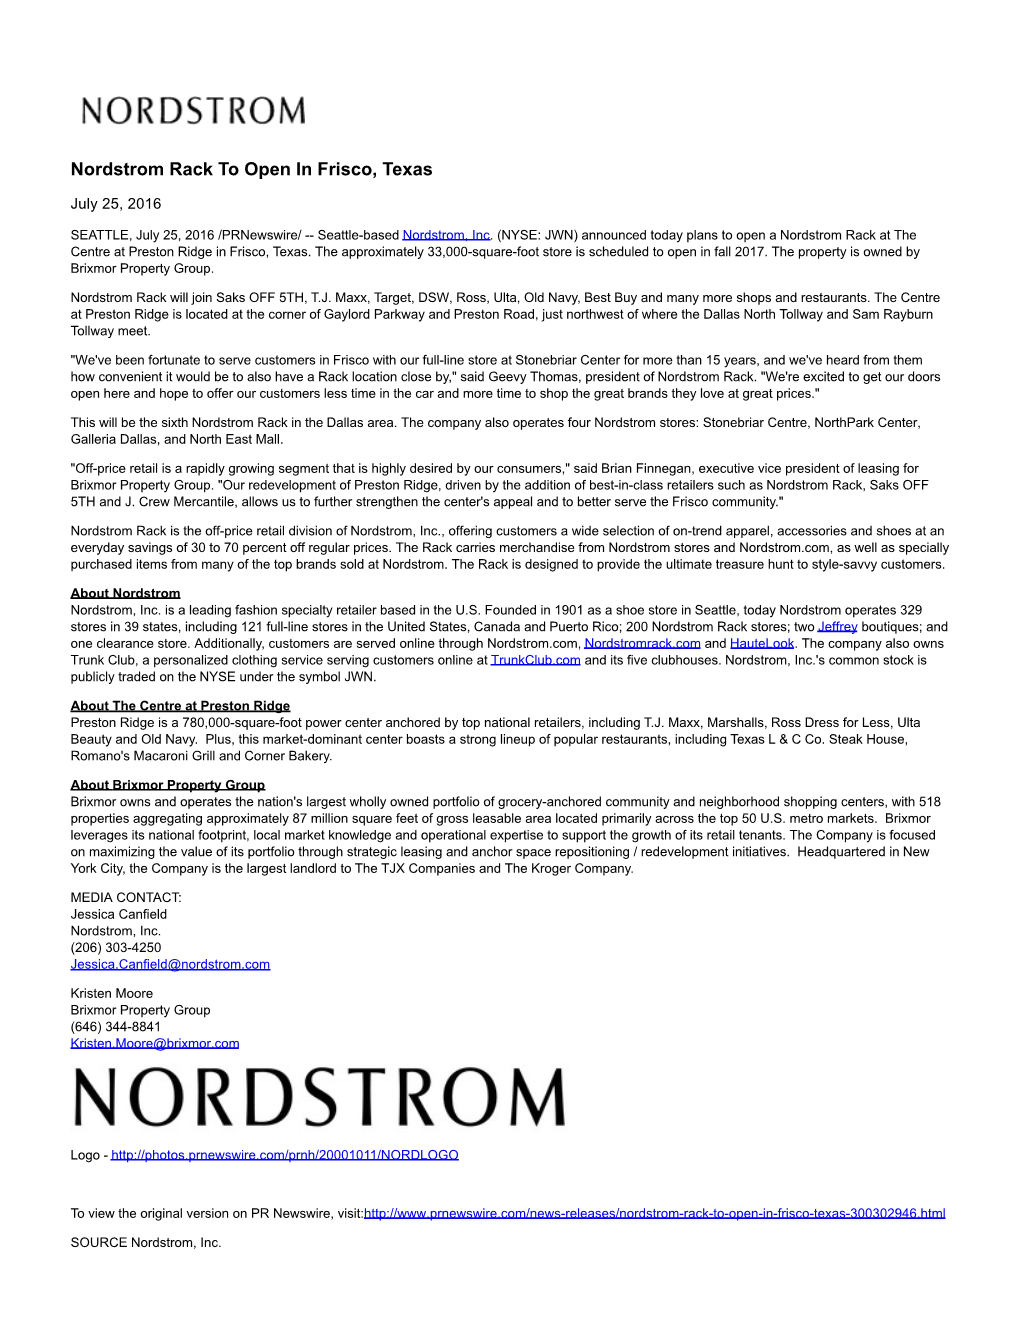 Nordstrom Rack to Open in Frisco, Texas